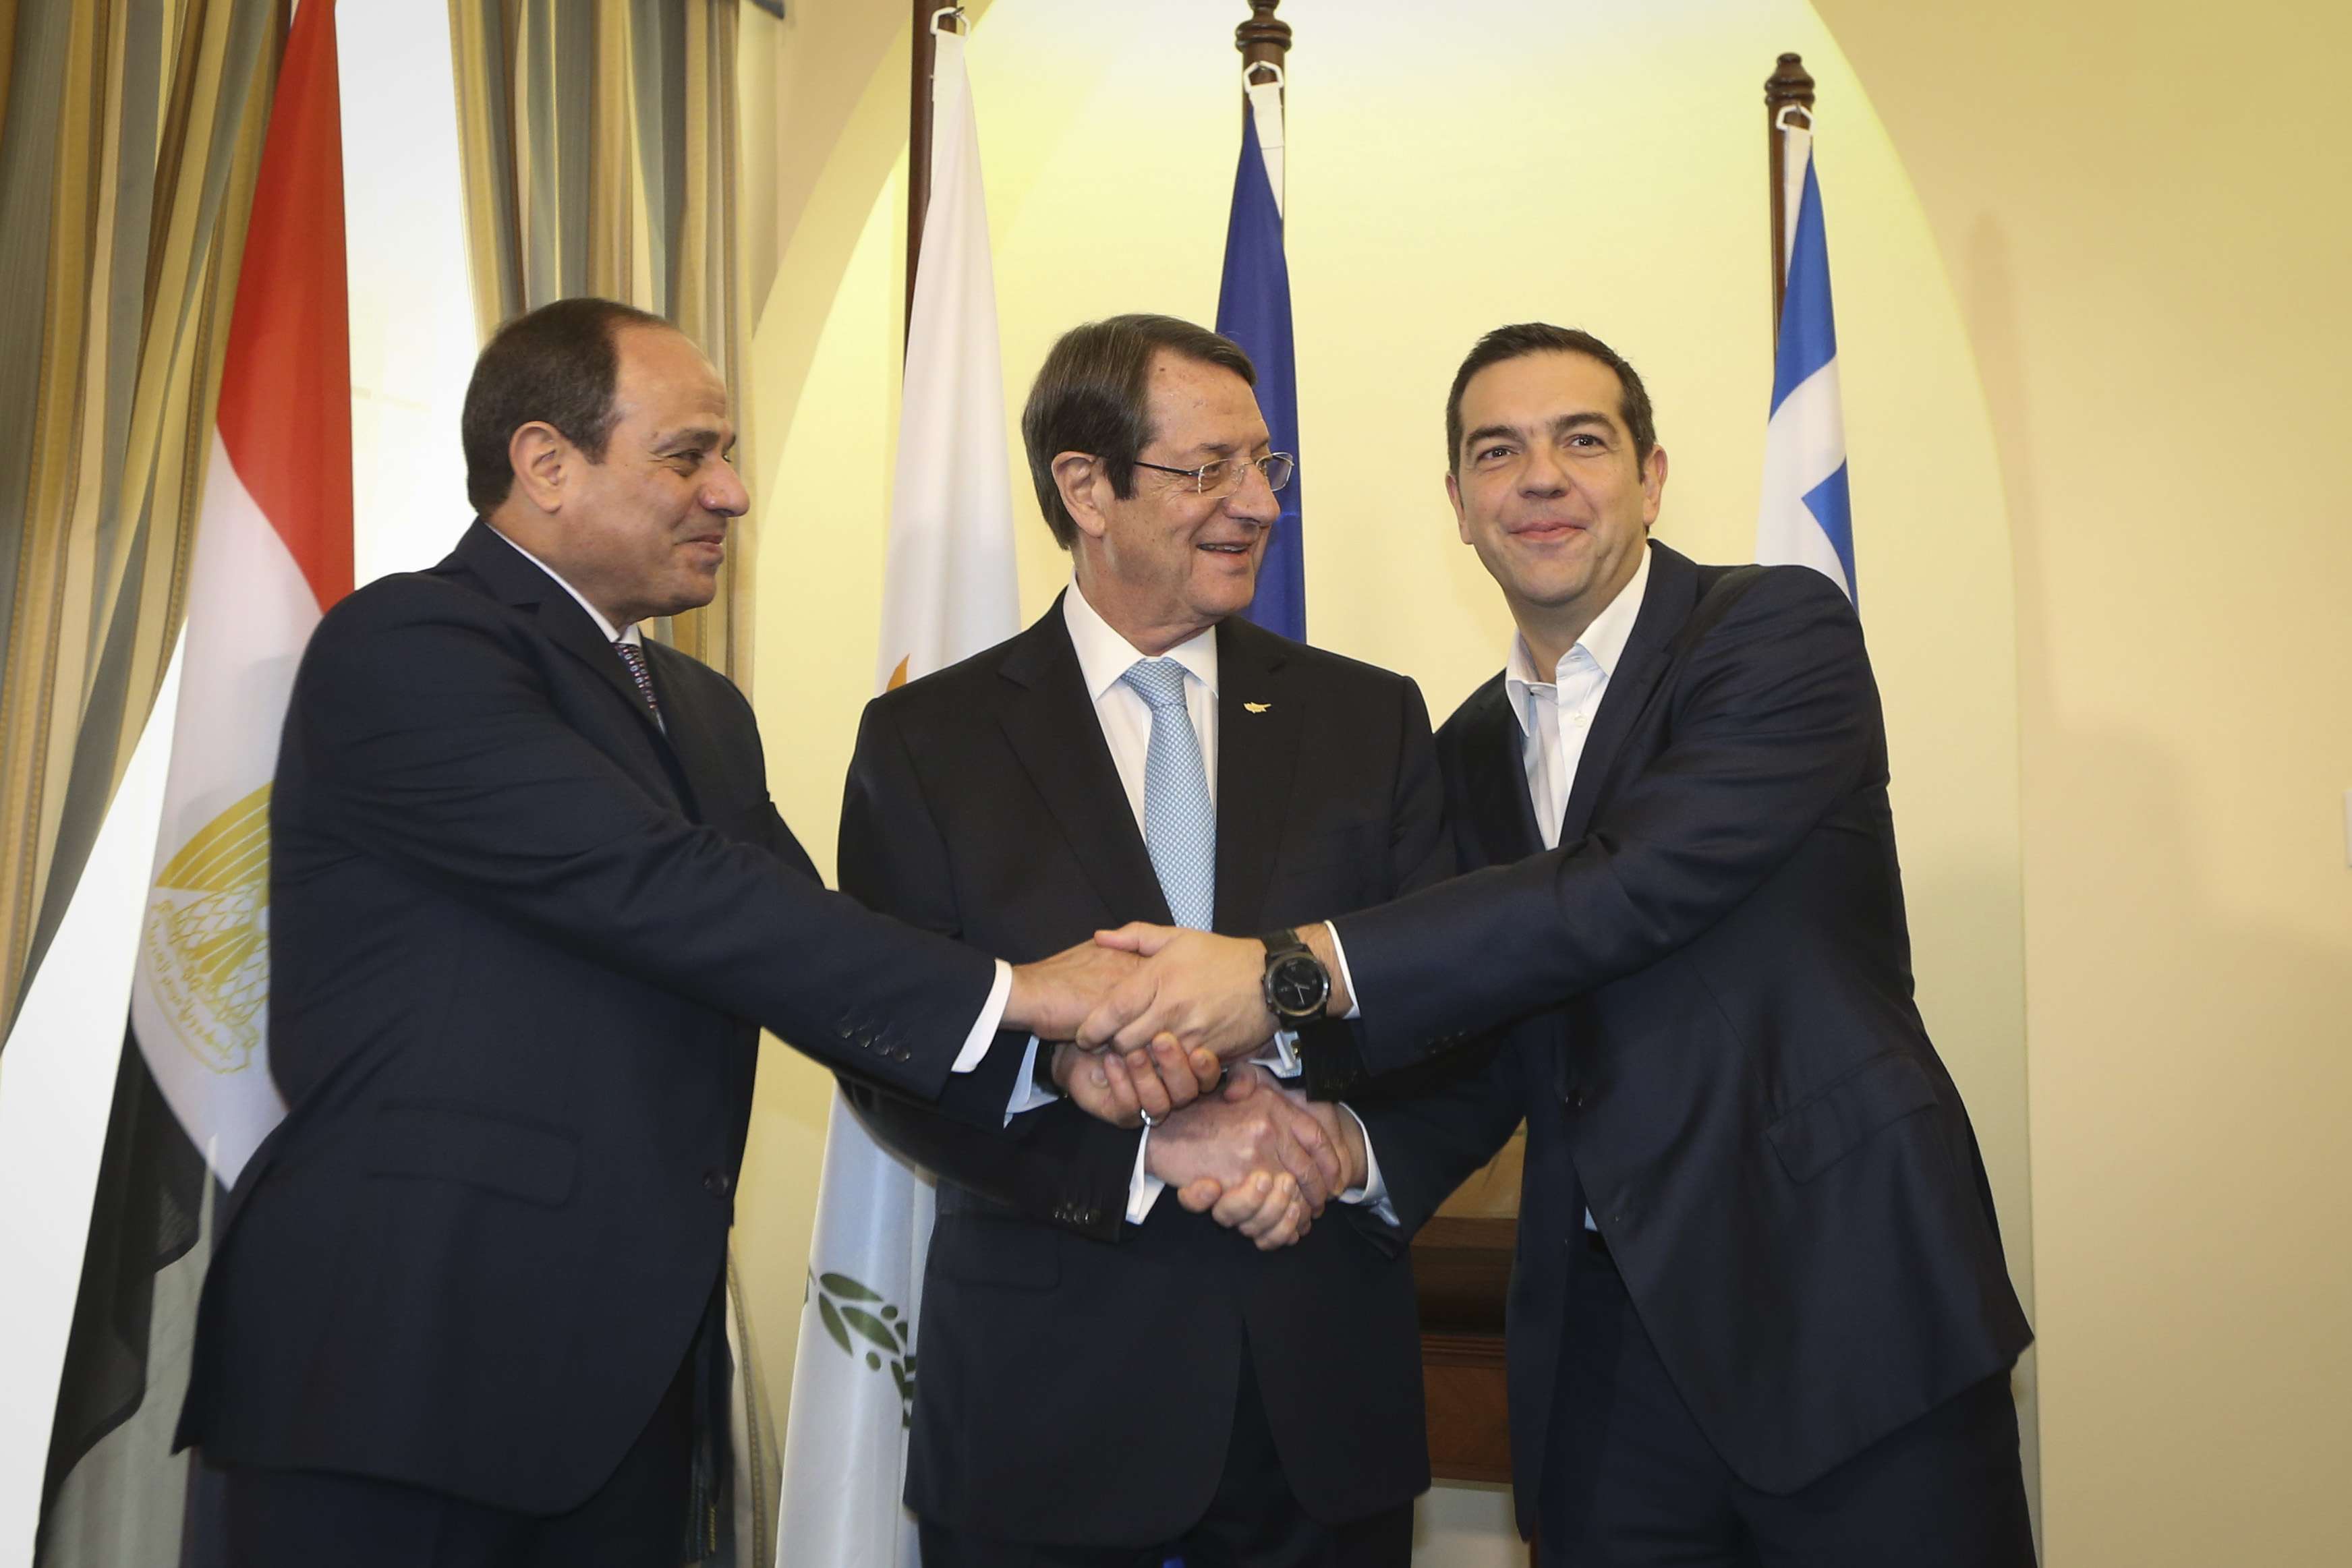 Οριοθέτηση κοινών θαλασσίων συνόρων αποφάσισαν Ελλάδα,Αίγυπτος και Κύπρος